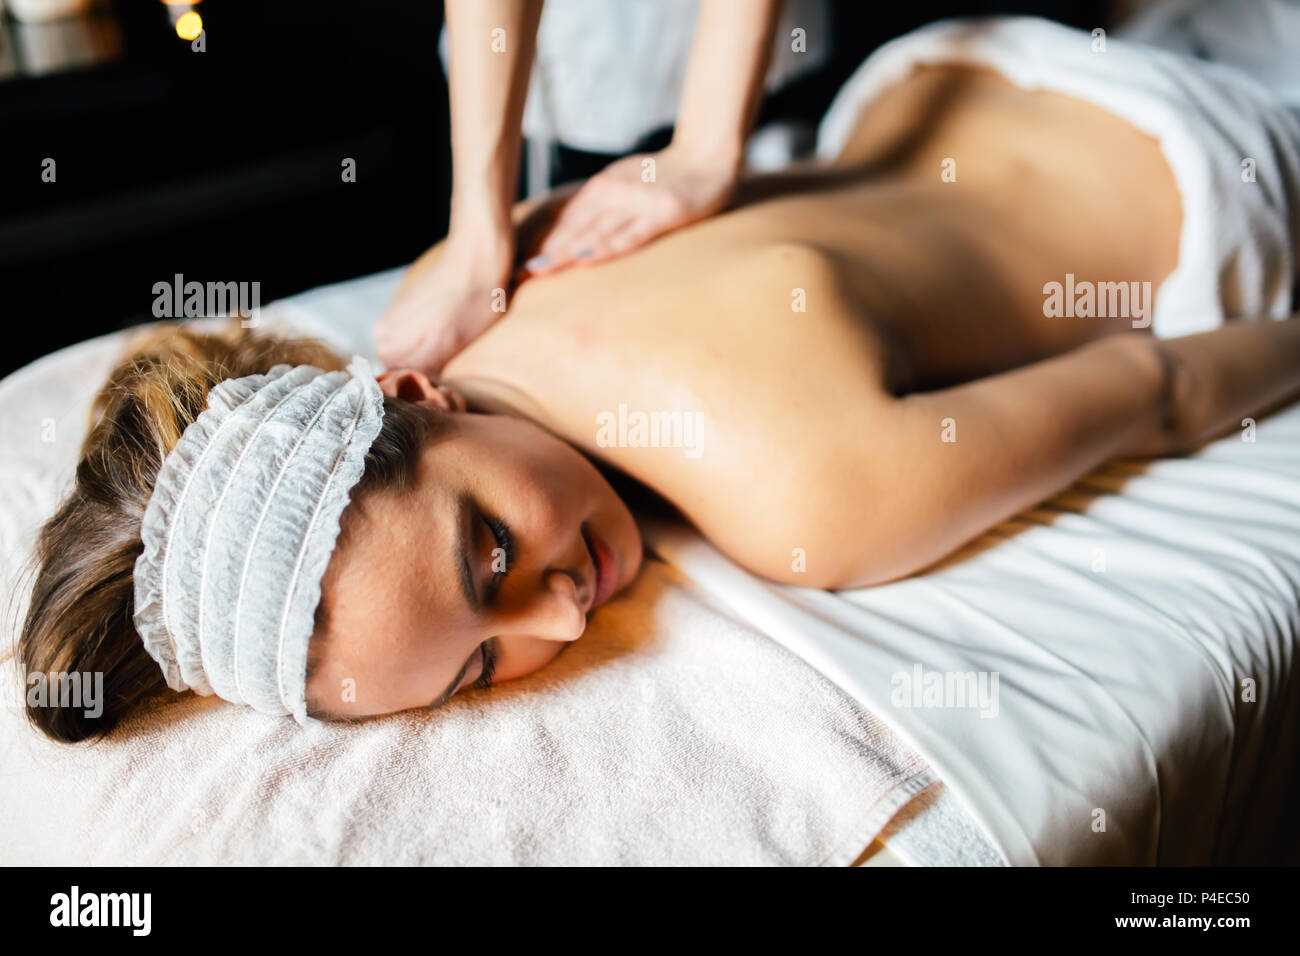 Beautiful woman enjoying massage treatment Stock Photo